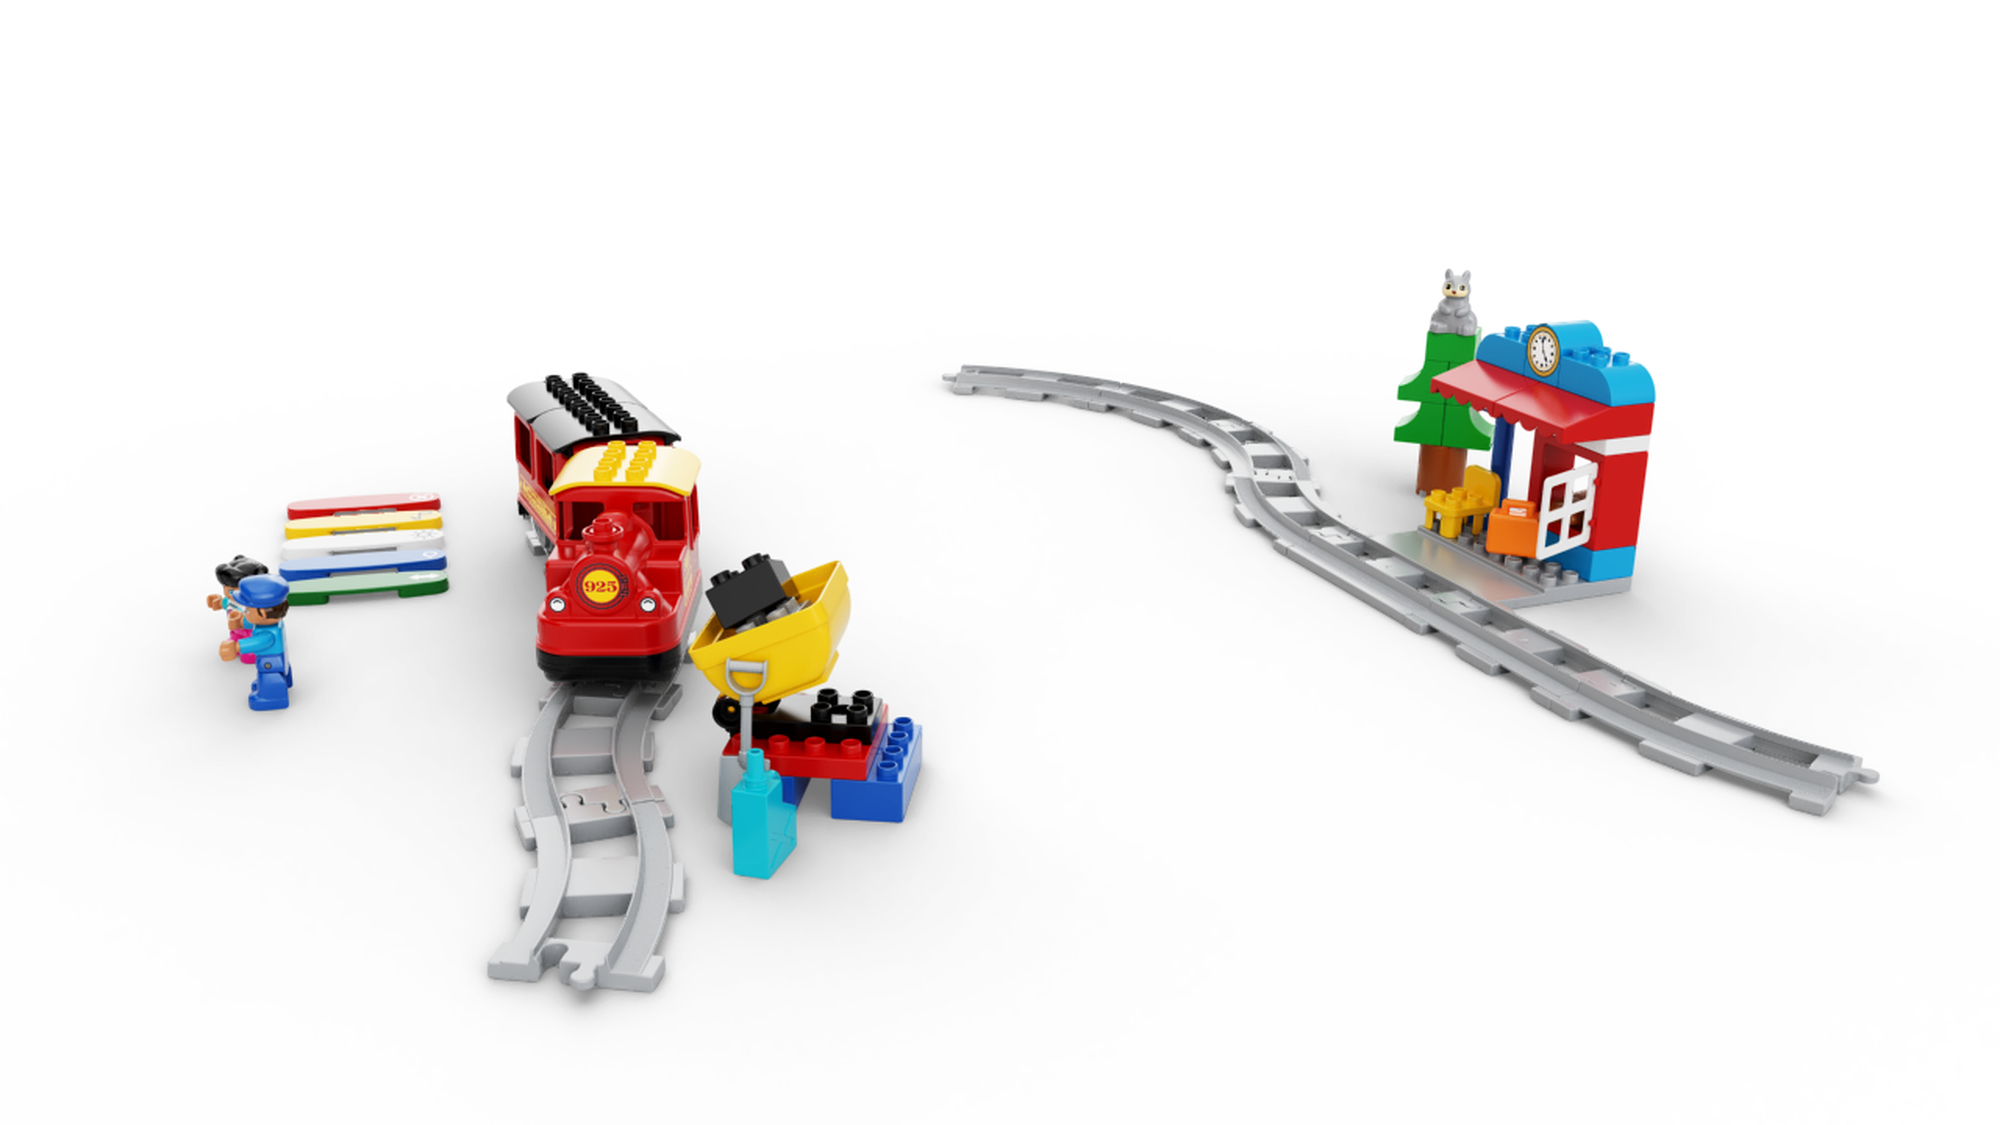 LEGO 10874, 10882, 10872 - Duplo, Train - Steam Train & Track